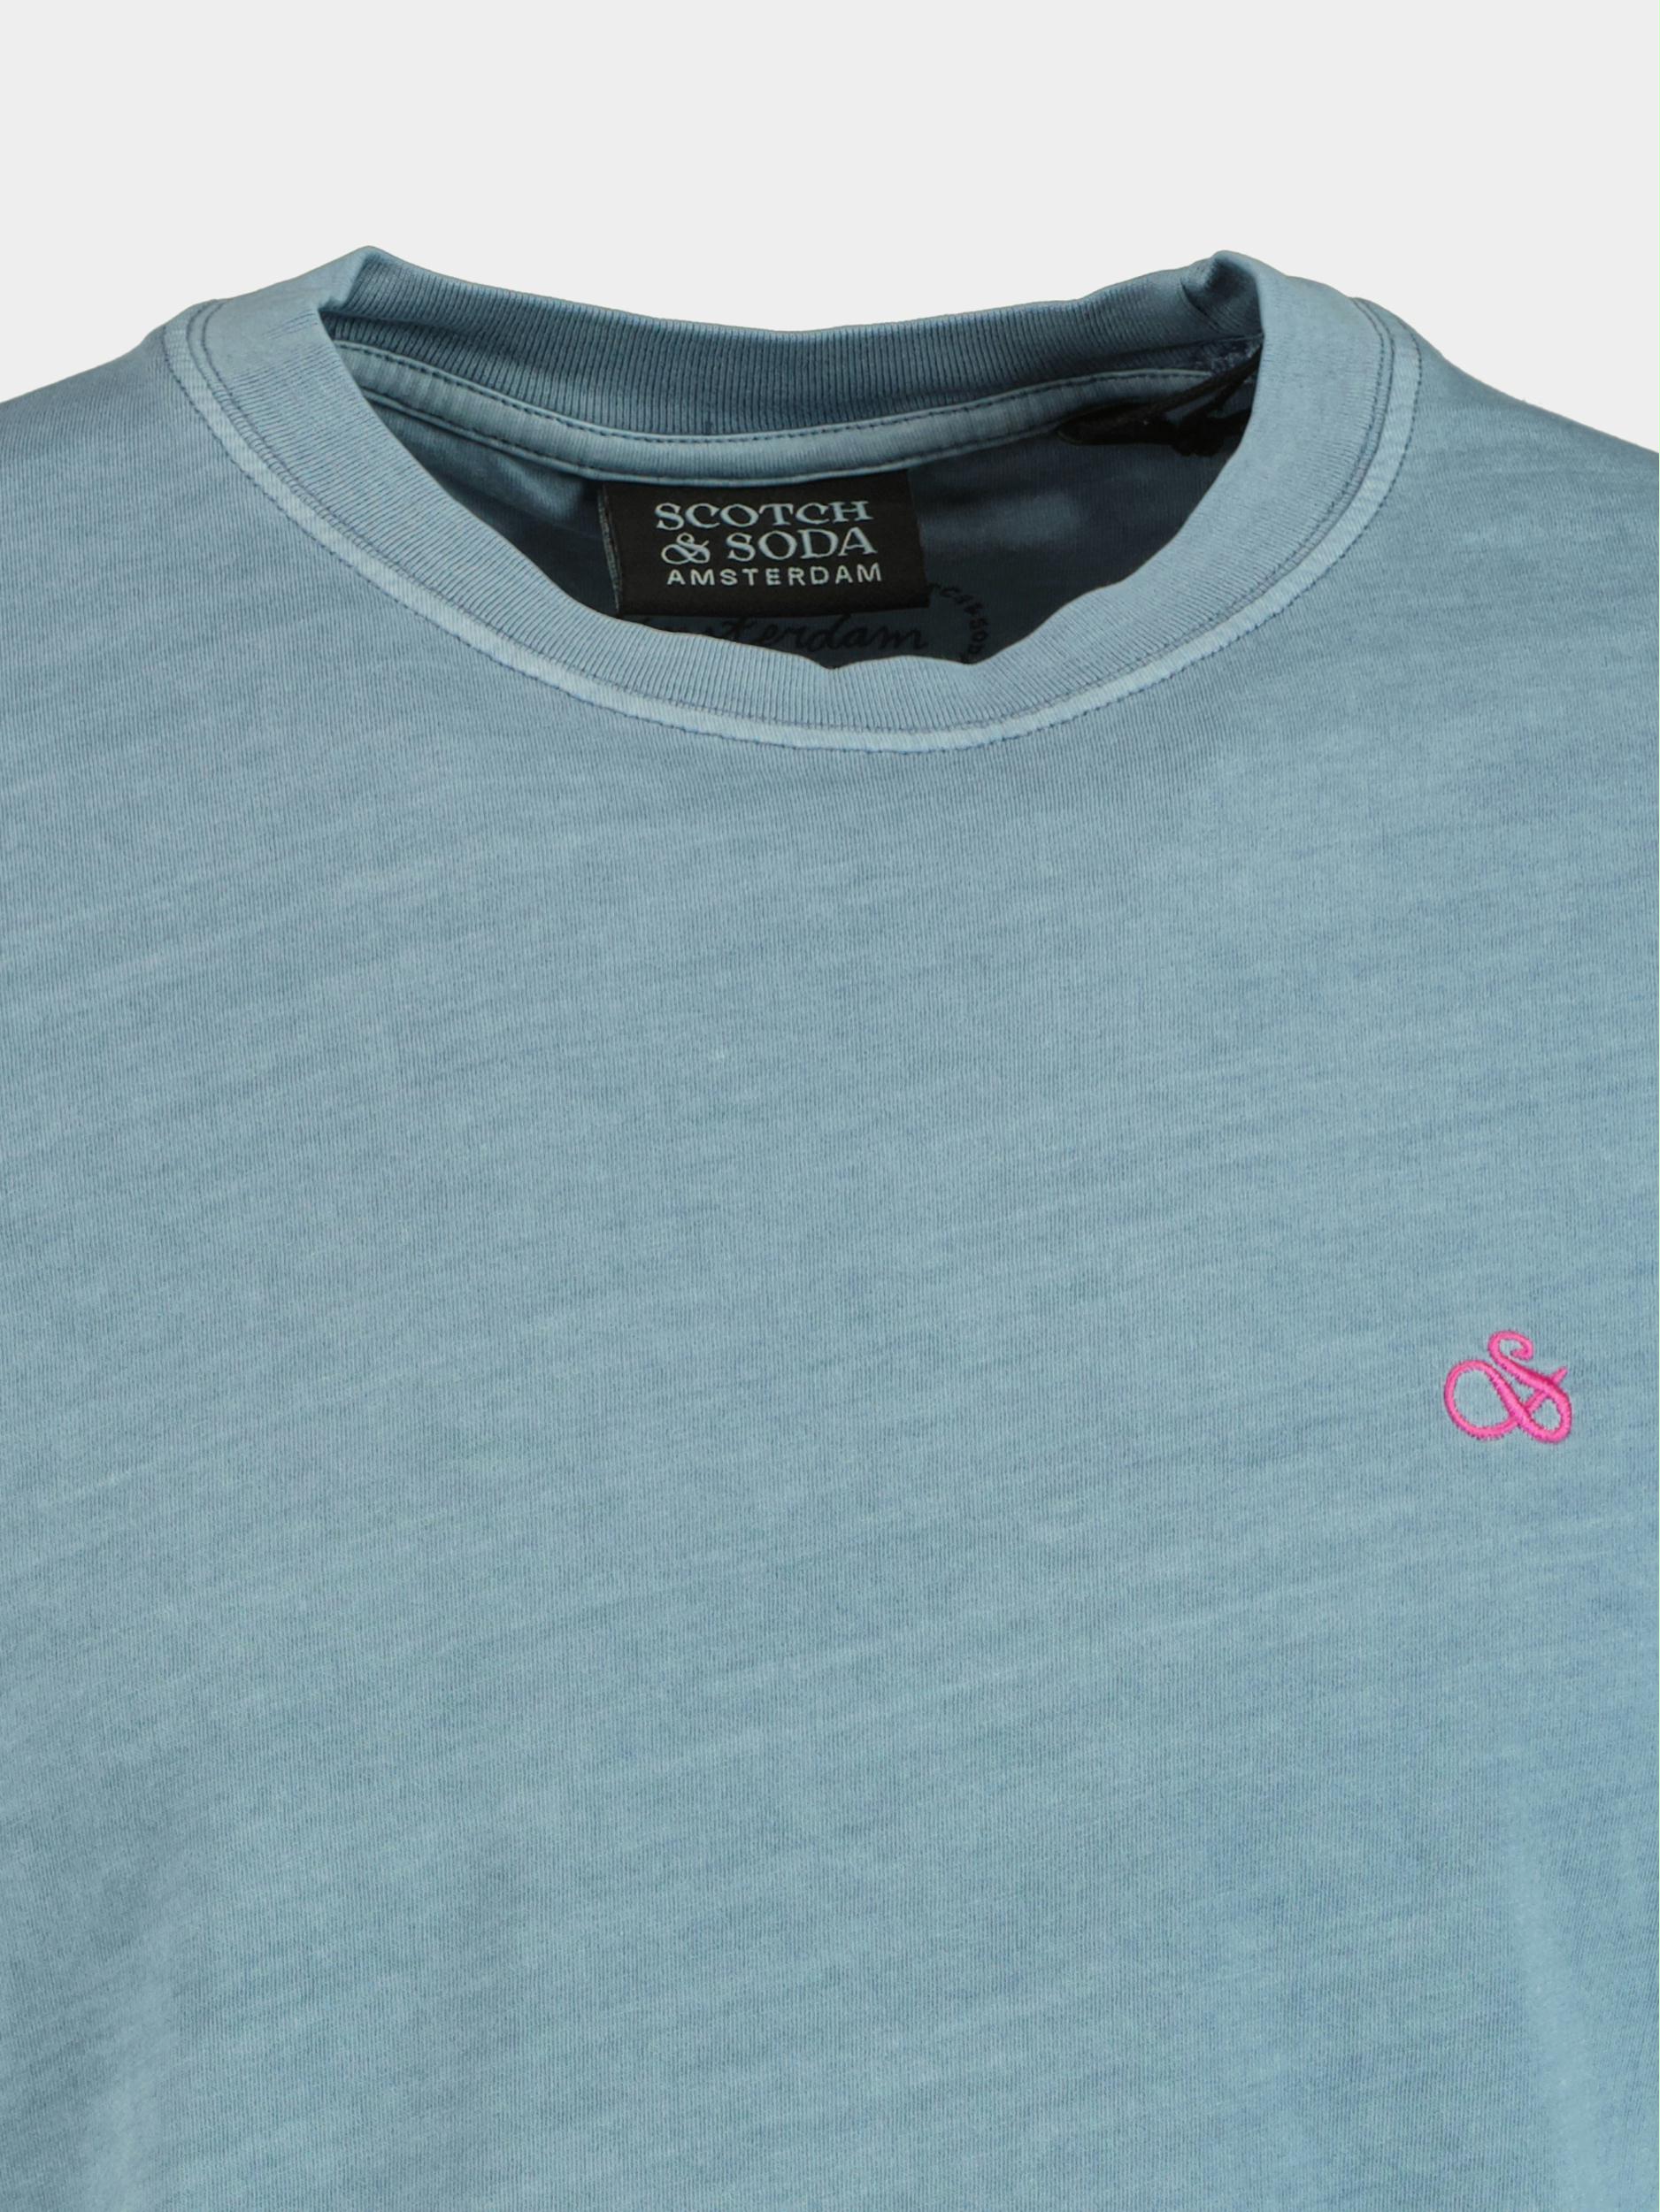 Scotch & Soda T-shirt korte mouw Blauw Garment-dyed logo crewneck T-s 167333/4855